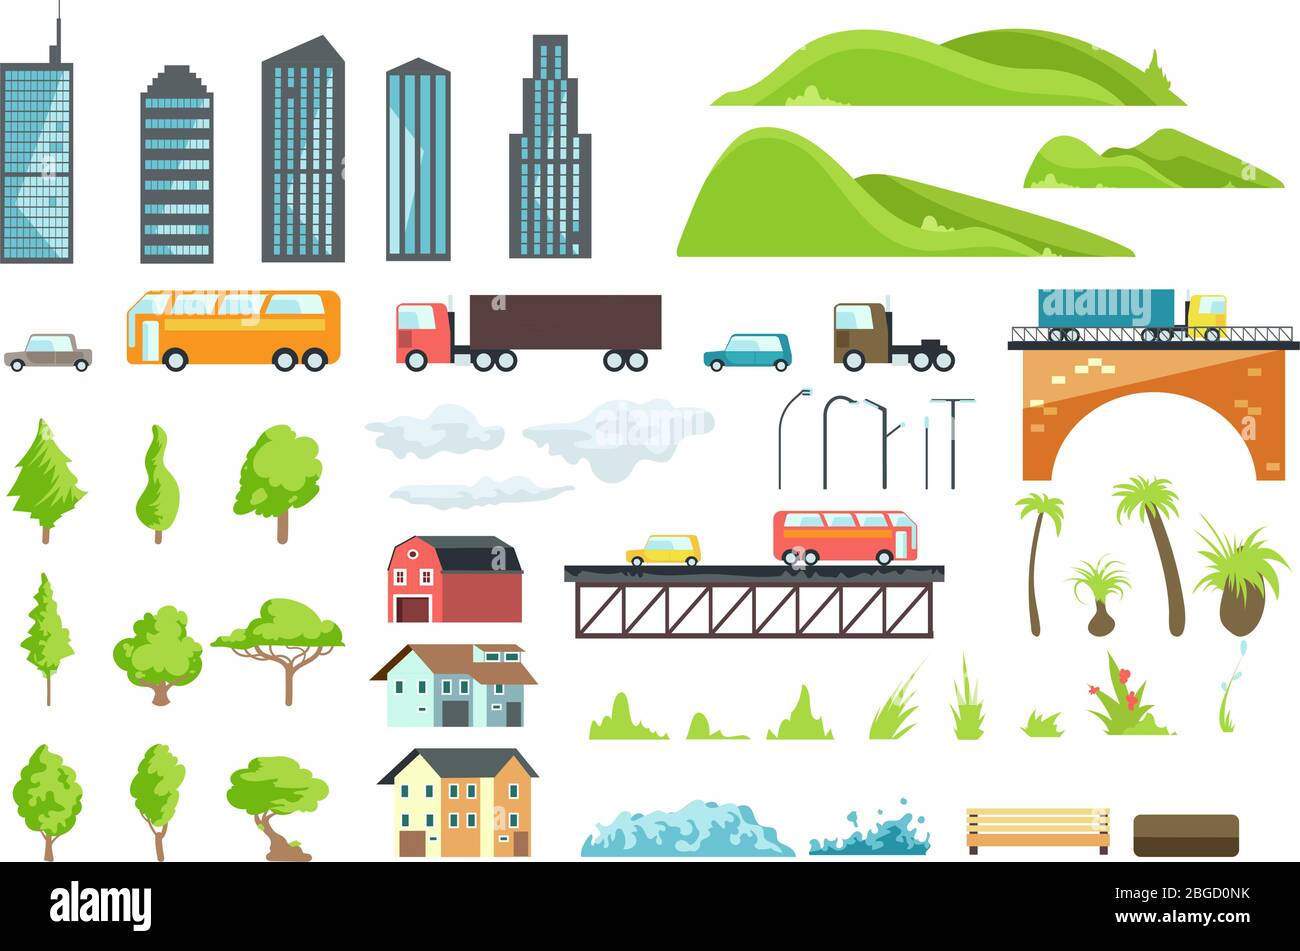 Flache Stadtplan Vektorelemente mit städtischen Verkehr, Straße, Bäume und Gebäude. Illustration von Brücke und Automobil, grünes Gras und Bank für Schnittstelle Stock Vektor